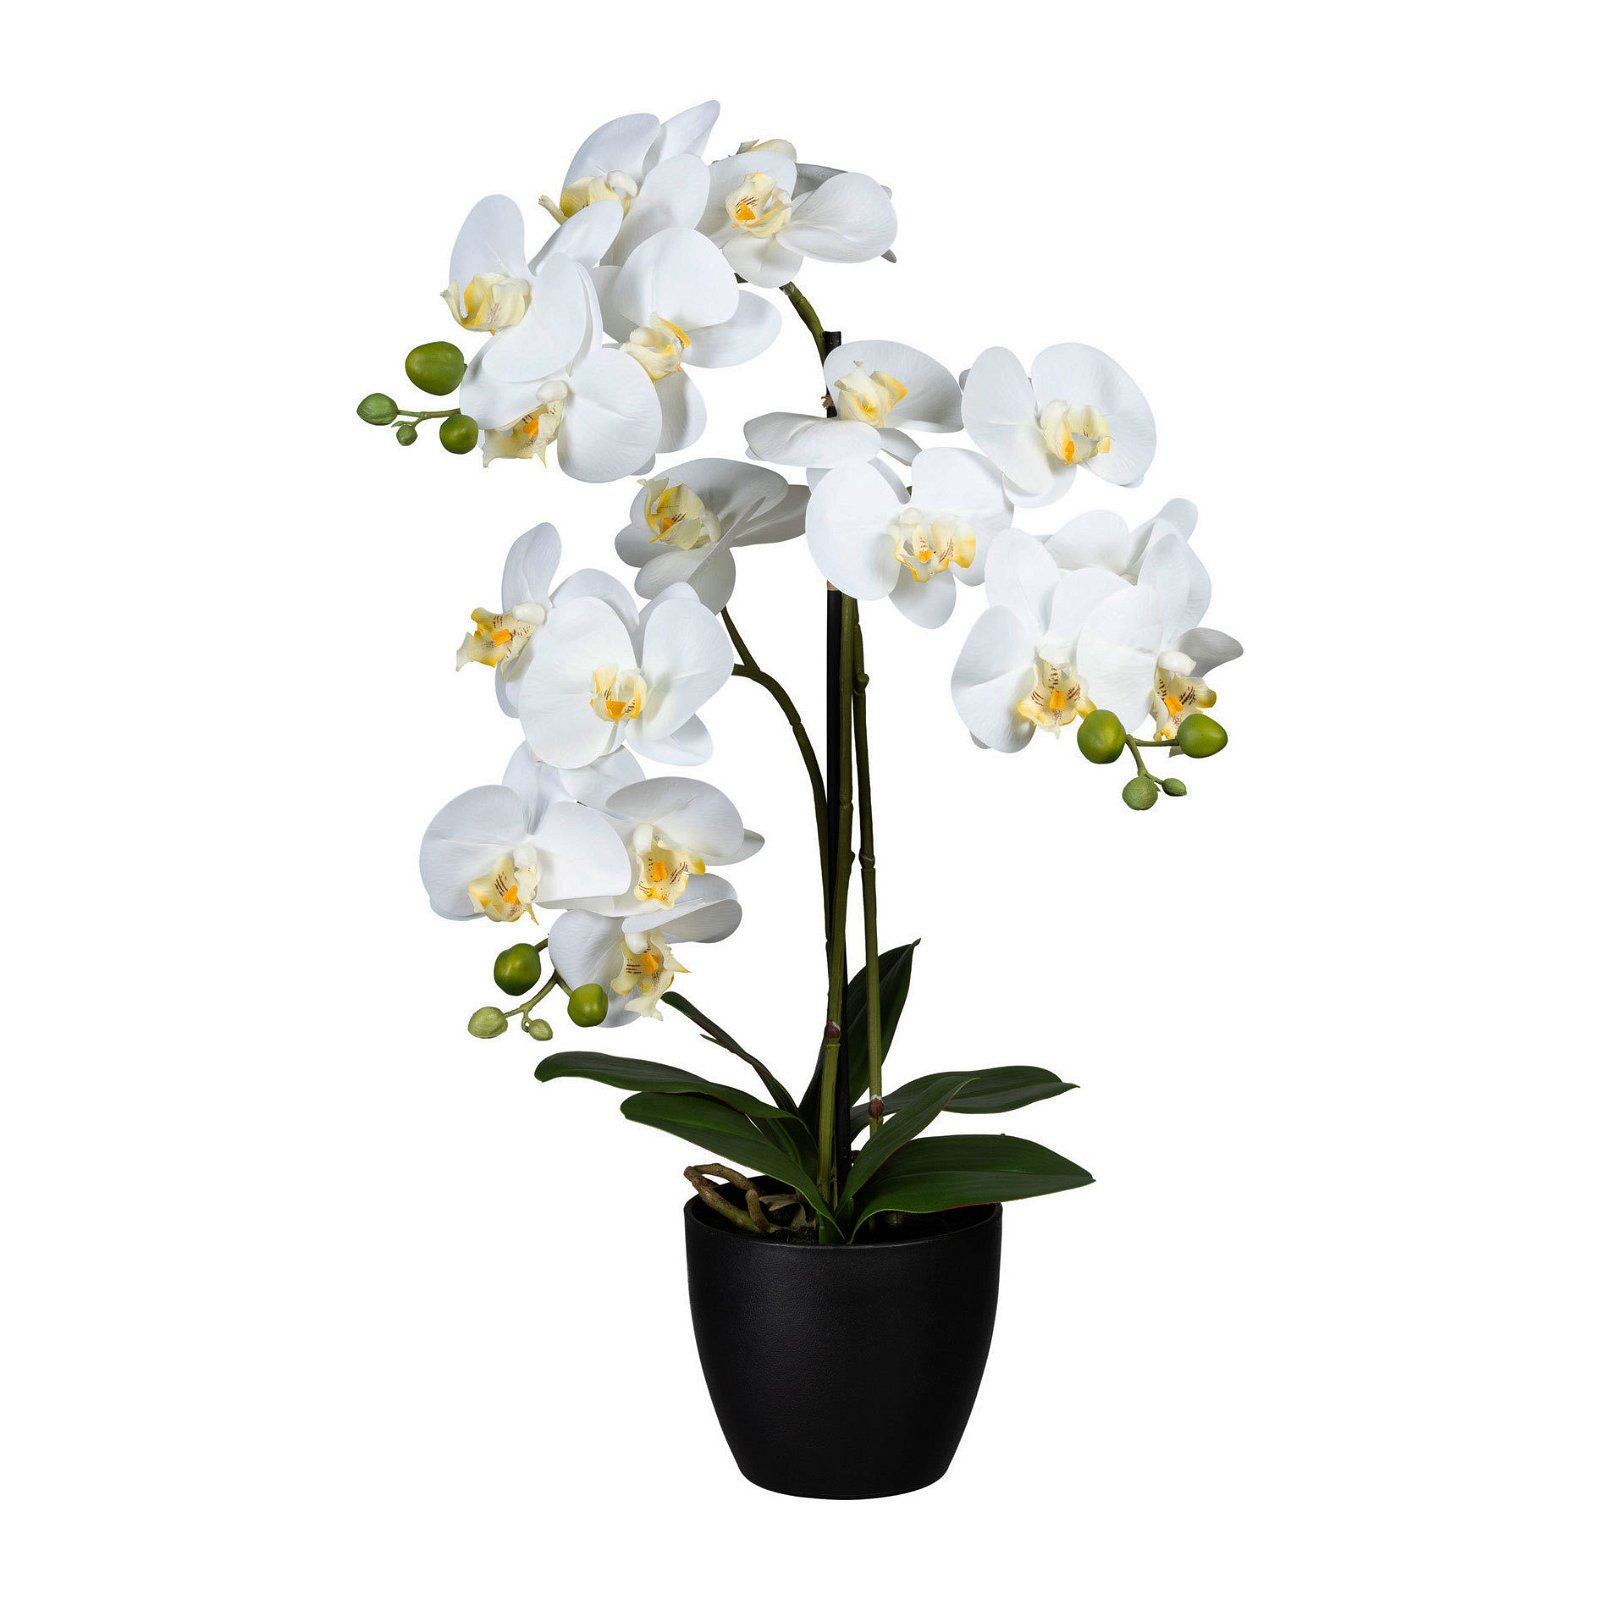 Künstliche Orchidee, Phalaenopsis, 3 Rispen, weiße Blüten, ca. 65 cm, 14 x 12 cm Kunststofftopf